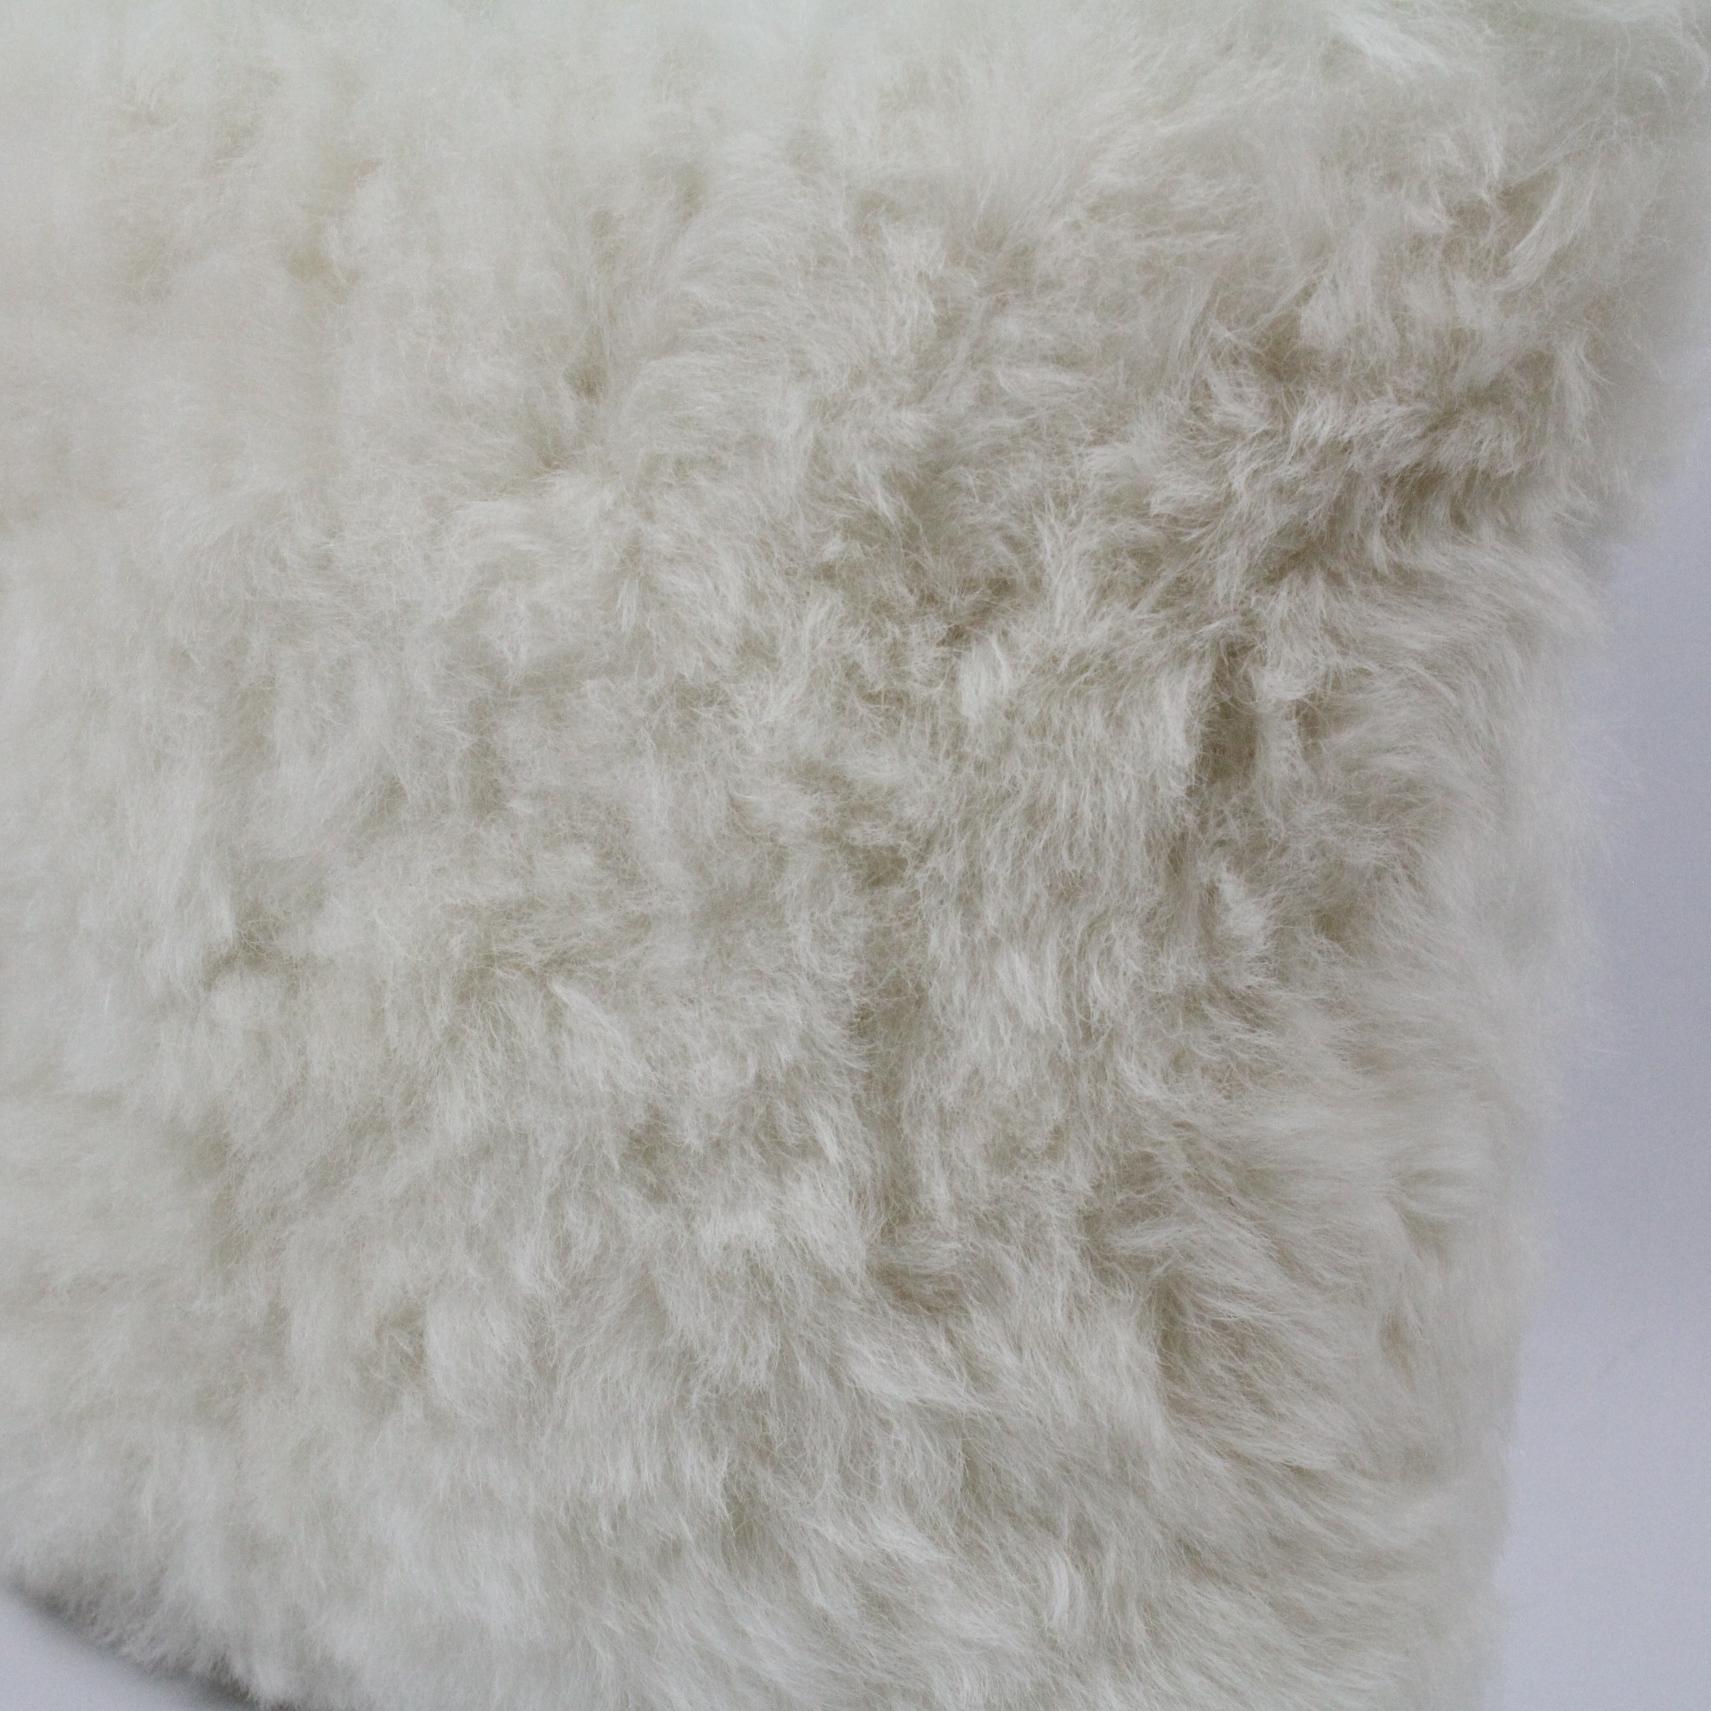 Oreiller en peau de mouton blanc naturel Créez une atmosphère de confort luxueux en habillant un lit ou un canapé avec cet attrayant oreiller en peau de mouton blanc naturel. Fabriqué à partir de la meilleure peau de mouton islandaise, ce charmant